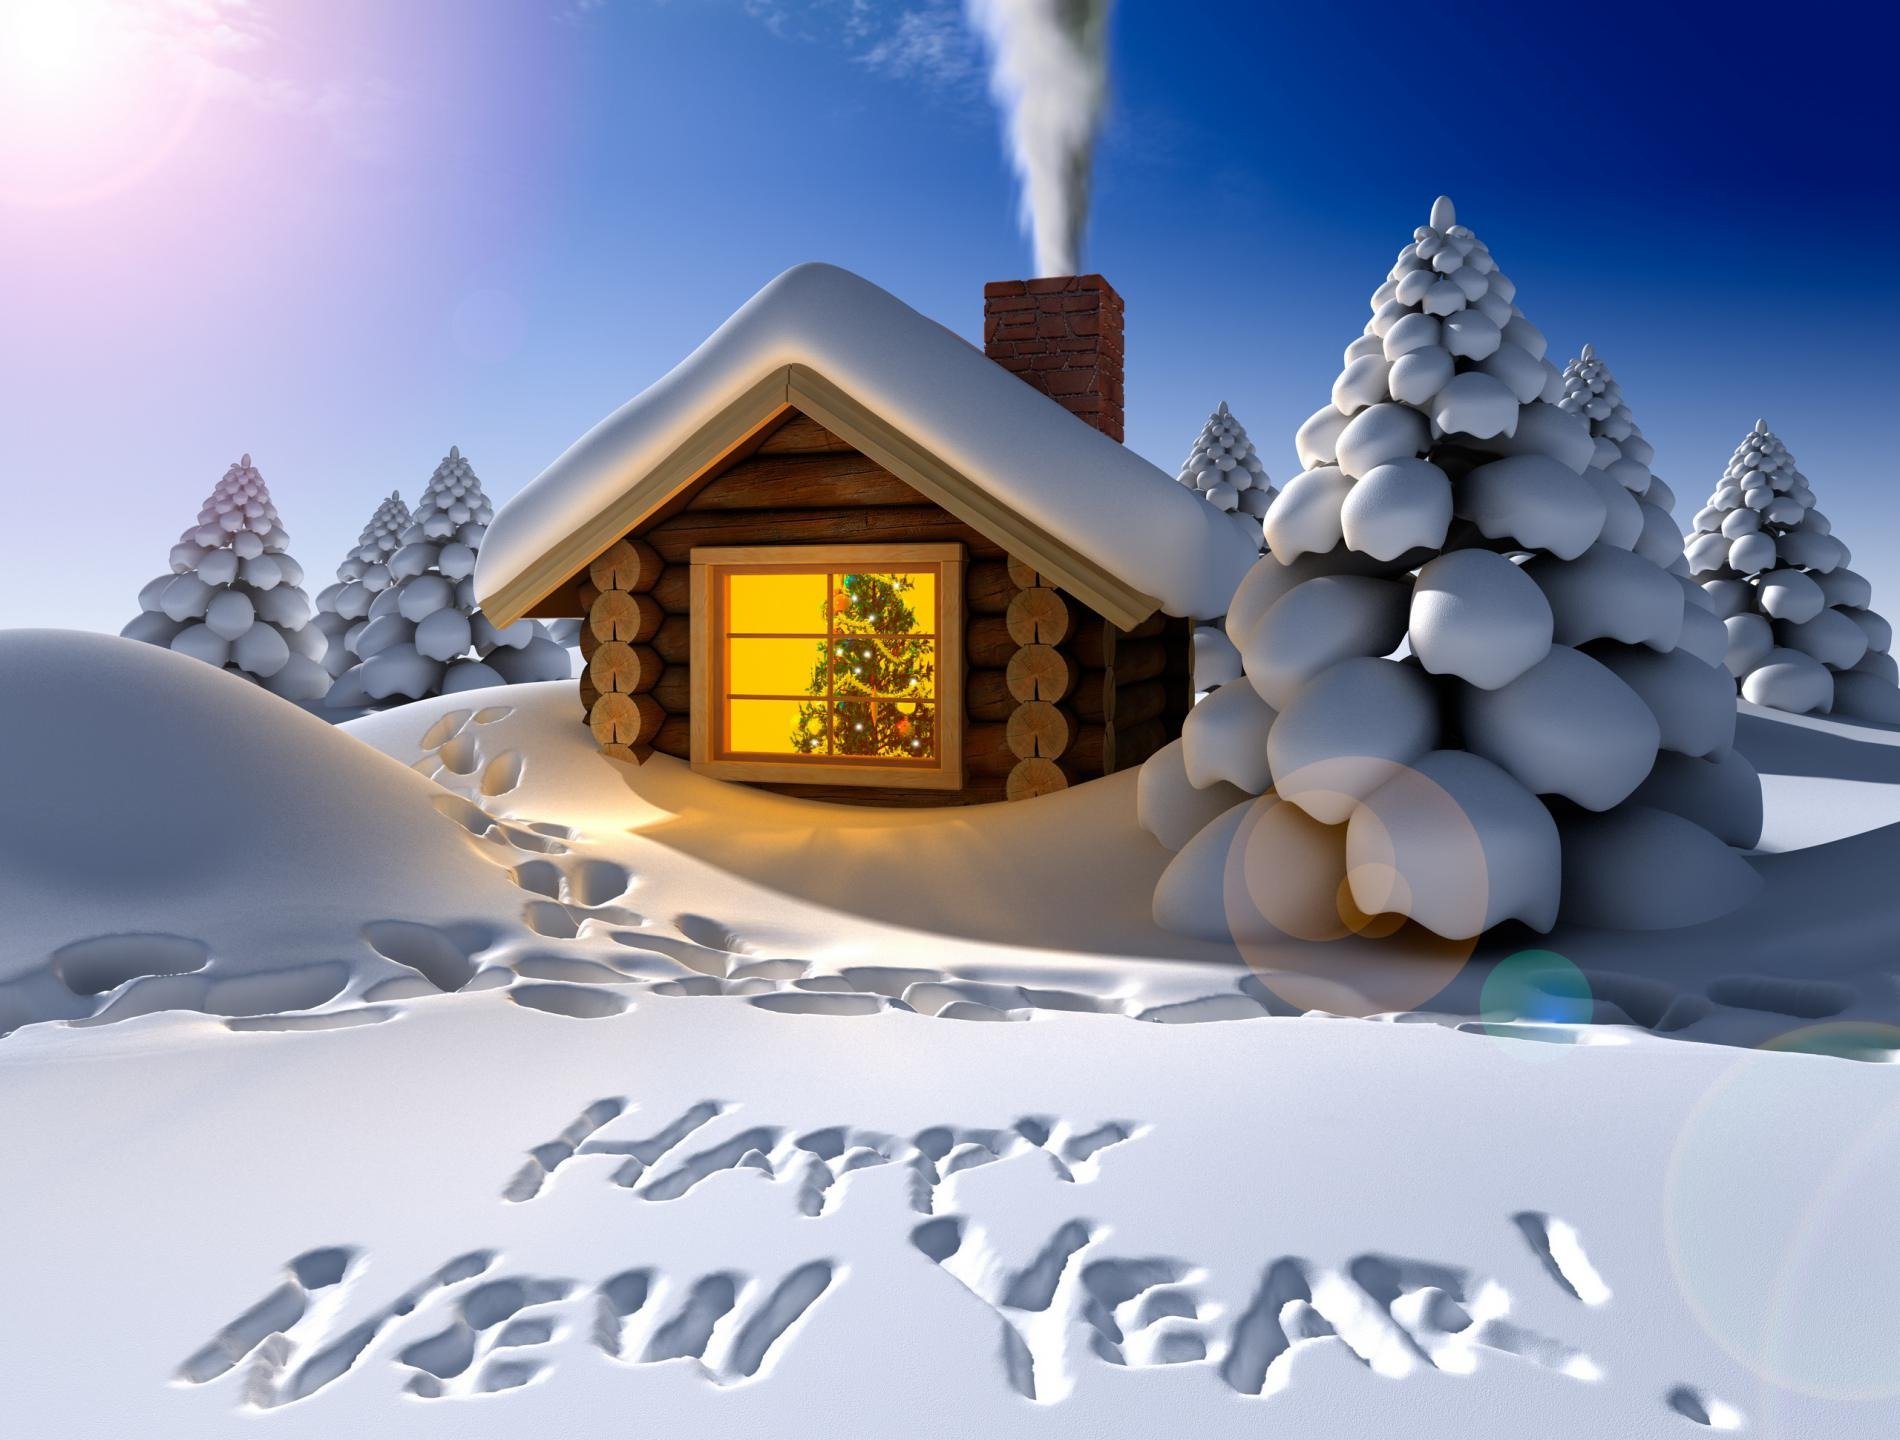 праздник новый год зима домик снег сугробы елки следы гирлянда украшения поздравление надпись дым ночь